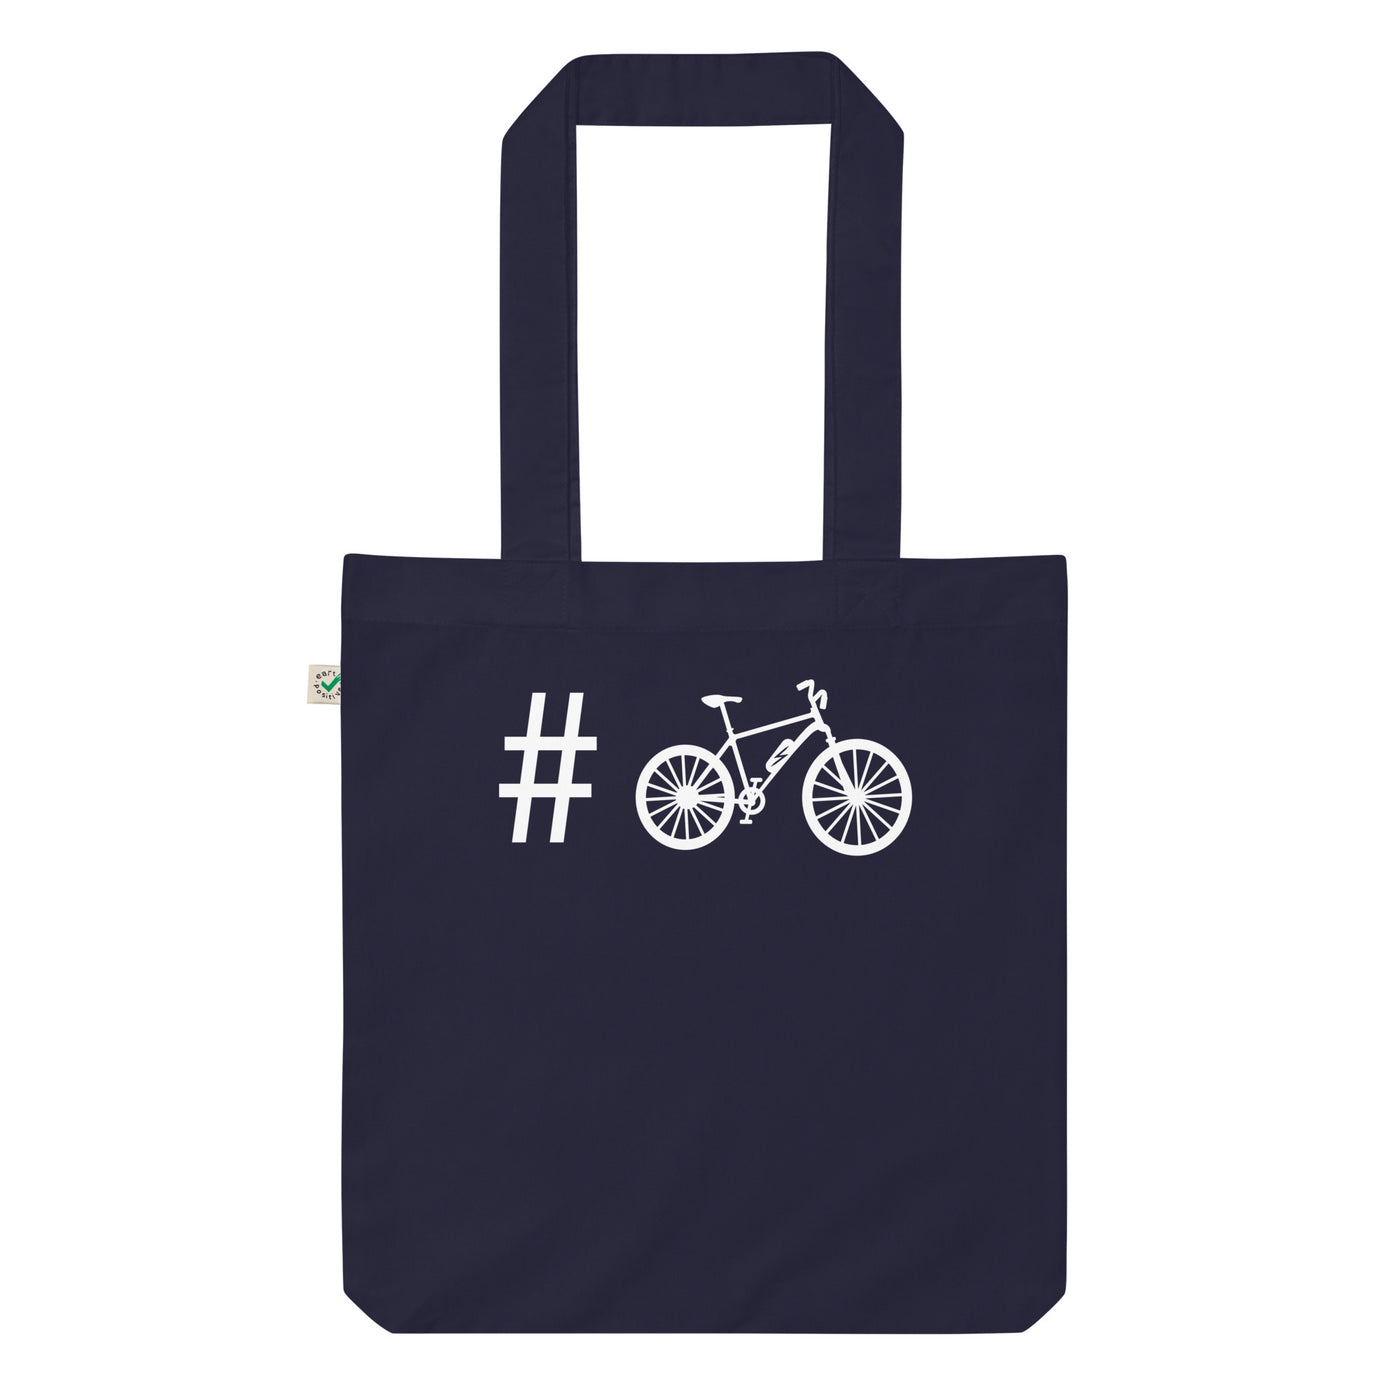 Hashtag - E-Bike - Organic Einkaufstasche e-bike Navy